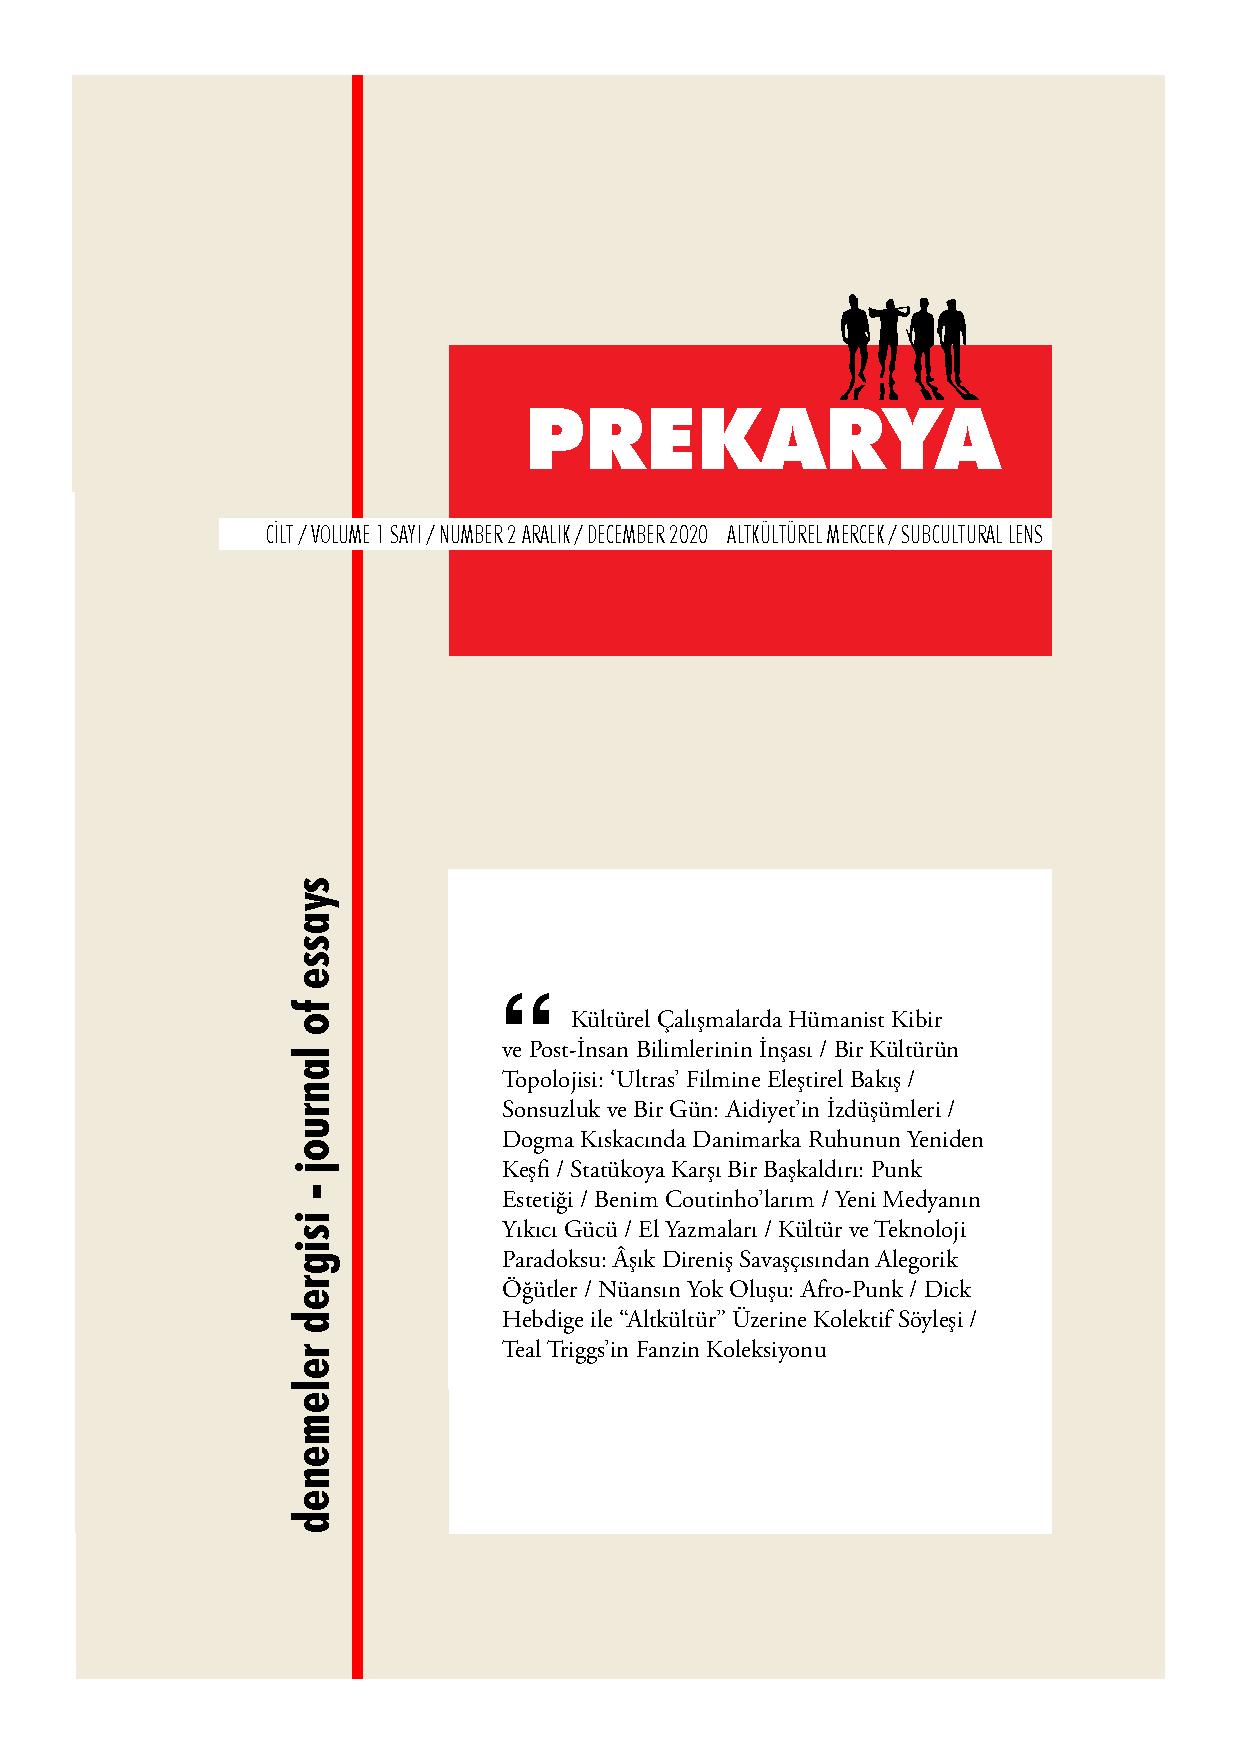 Prekarya